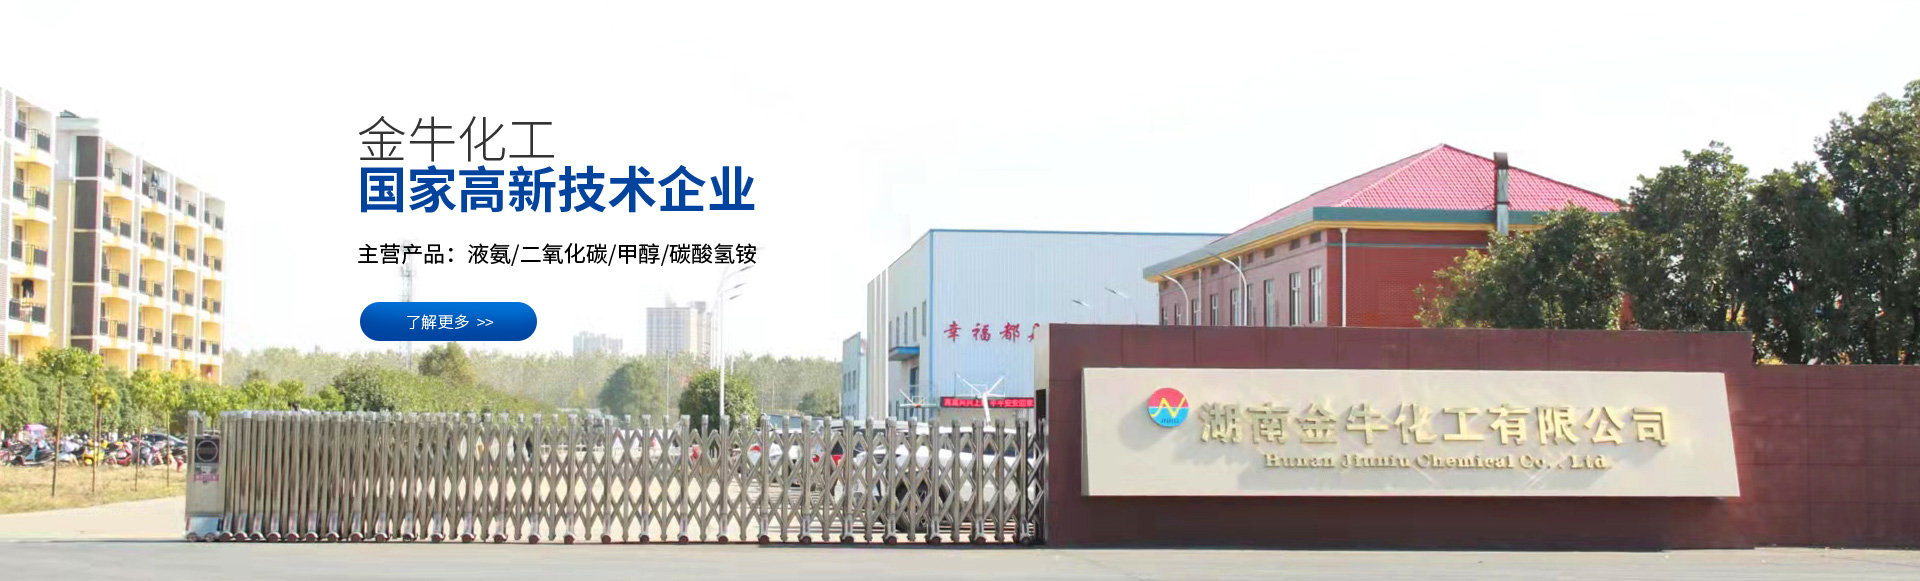 湖南化工研究院有限公司-中型化肥化工-碳酸氫铵